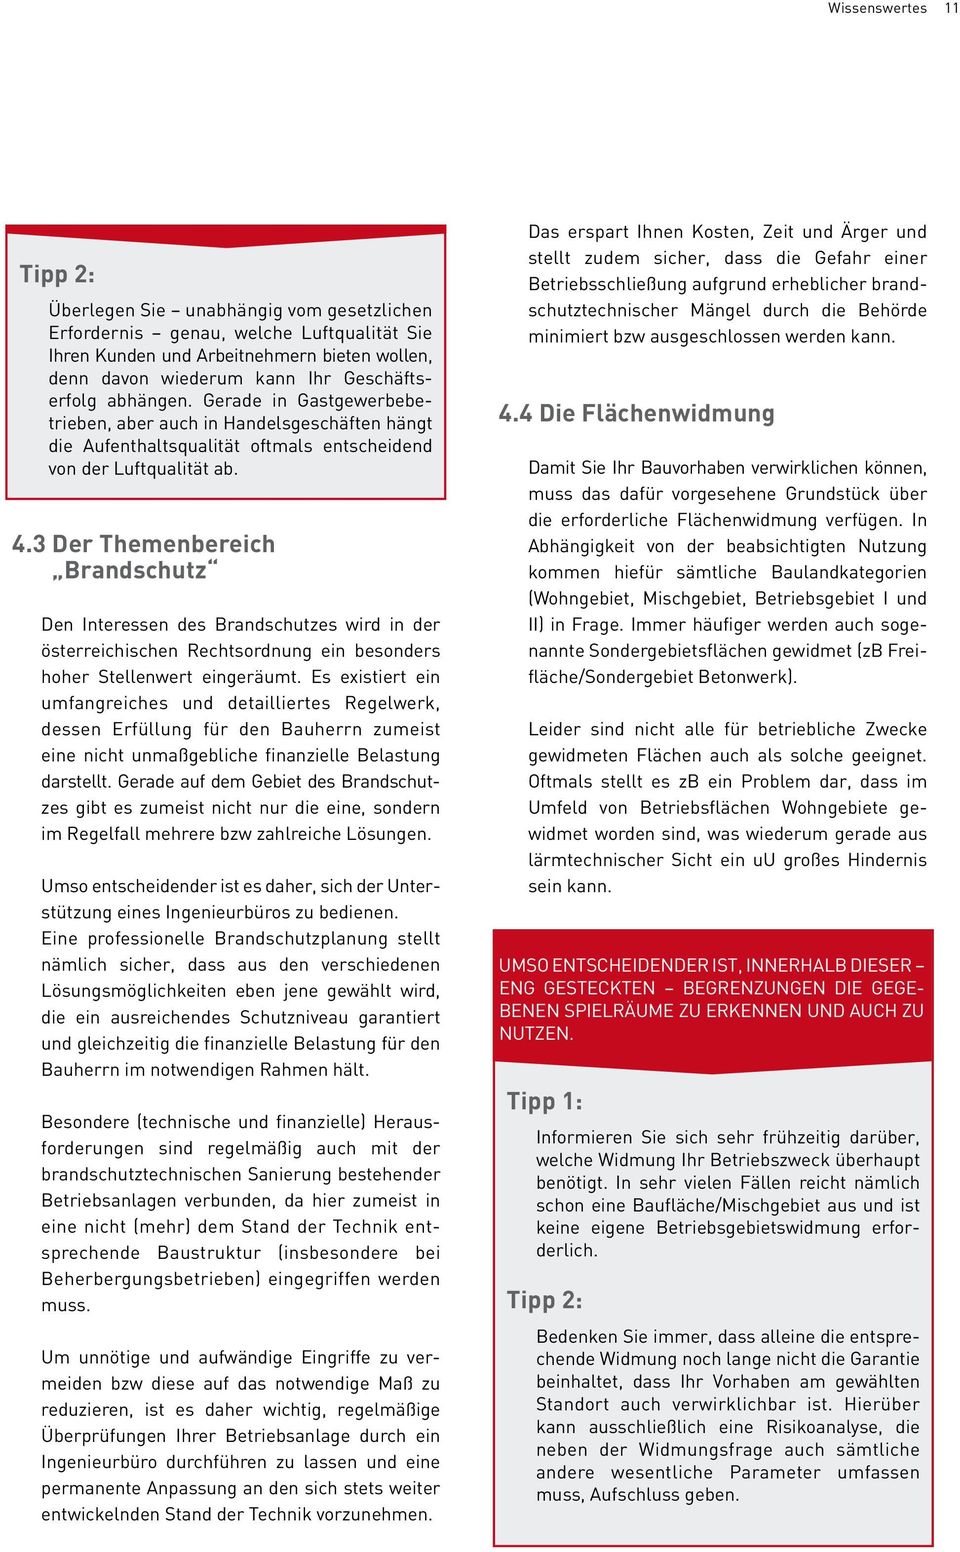 3 Der Themenbereich Brandschutz Den Interessen des Brandschutzes wird in der österreichischen Rechtsordnung ein besonders hoher Stellenwert eingeräumt.